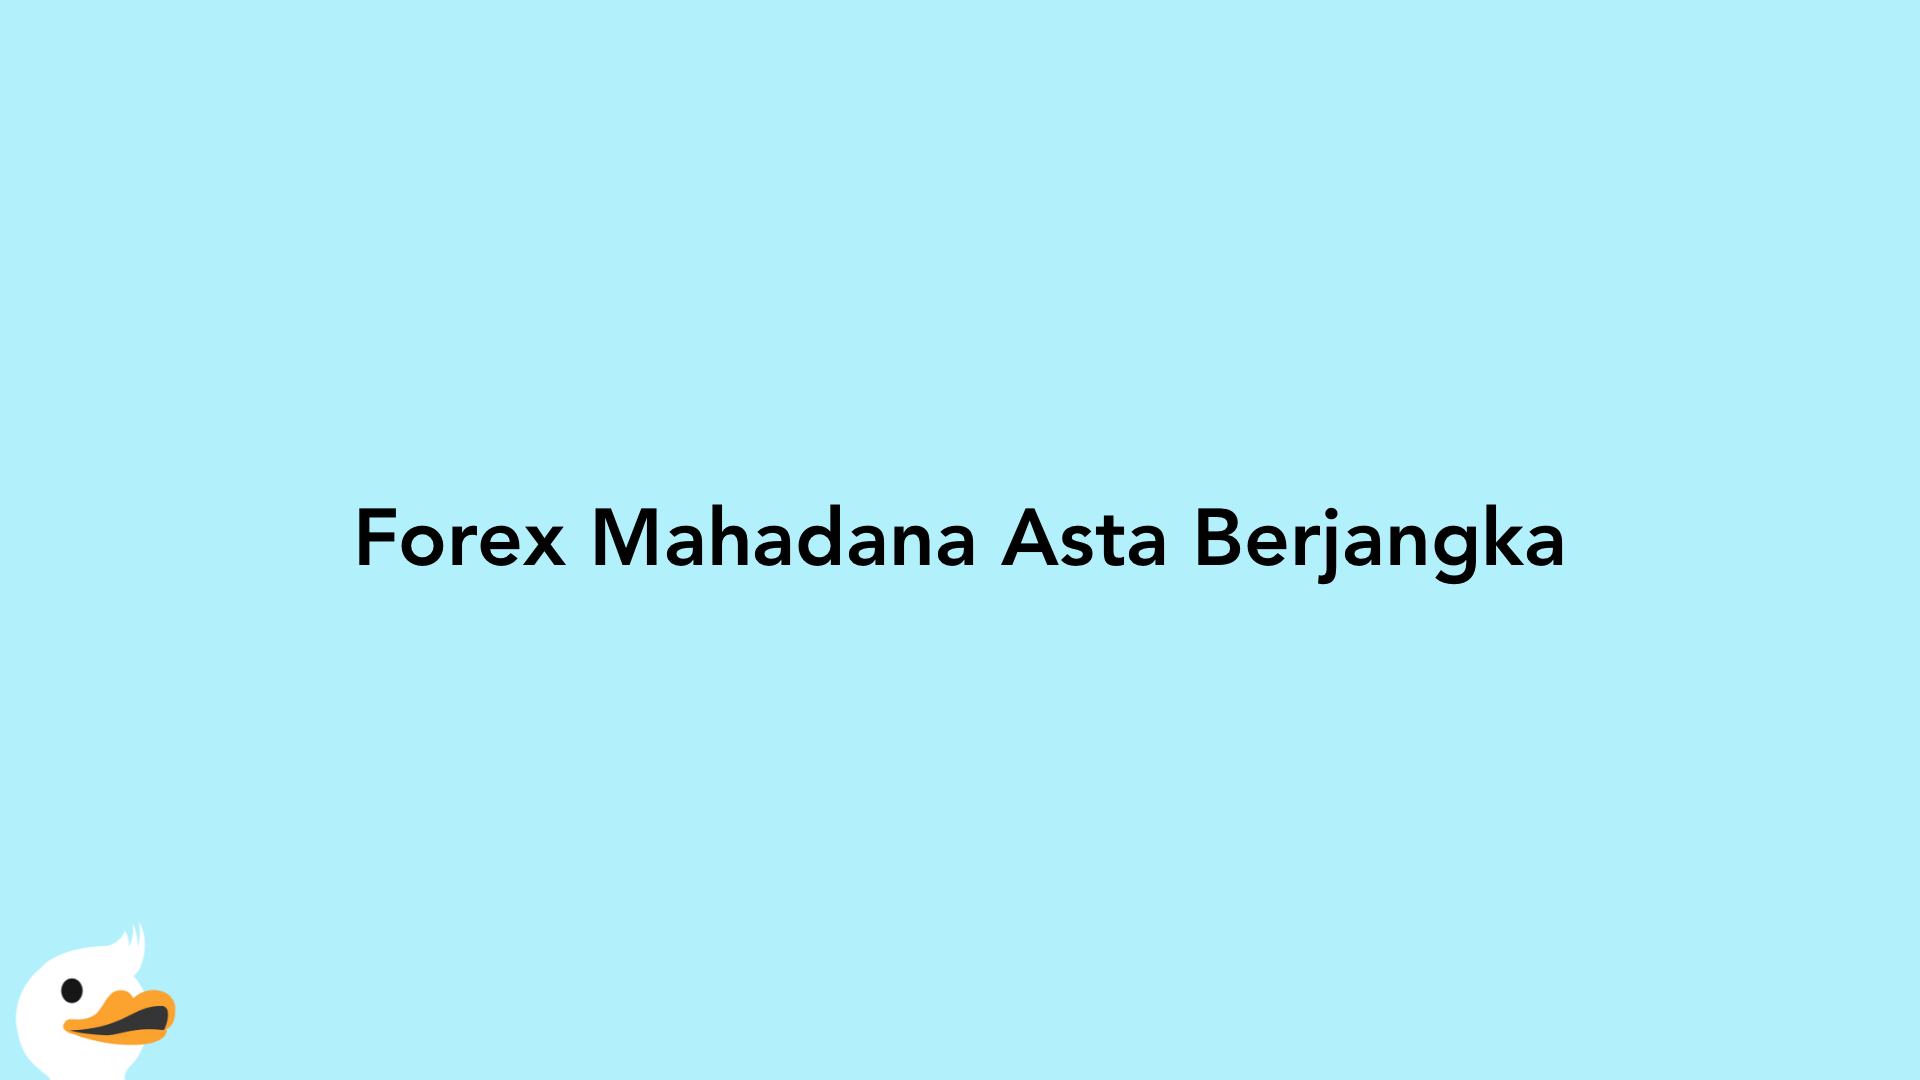 Forex Mahadana Asta Berjangka